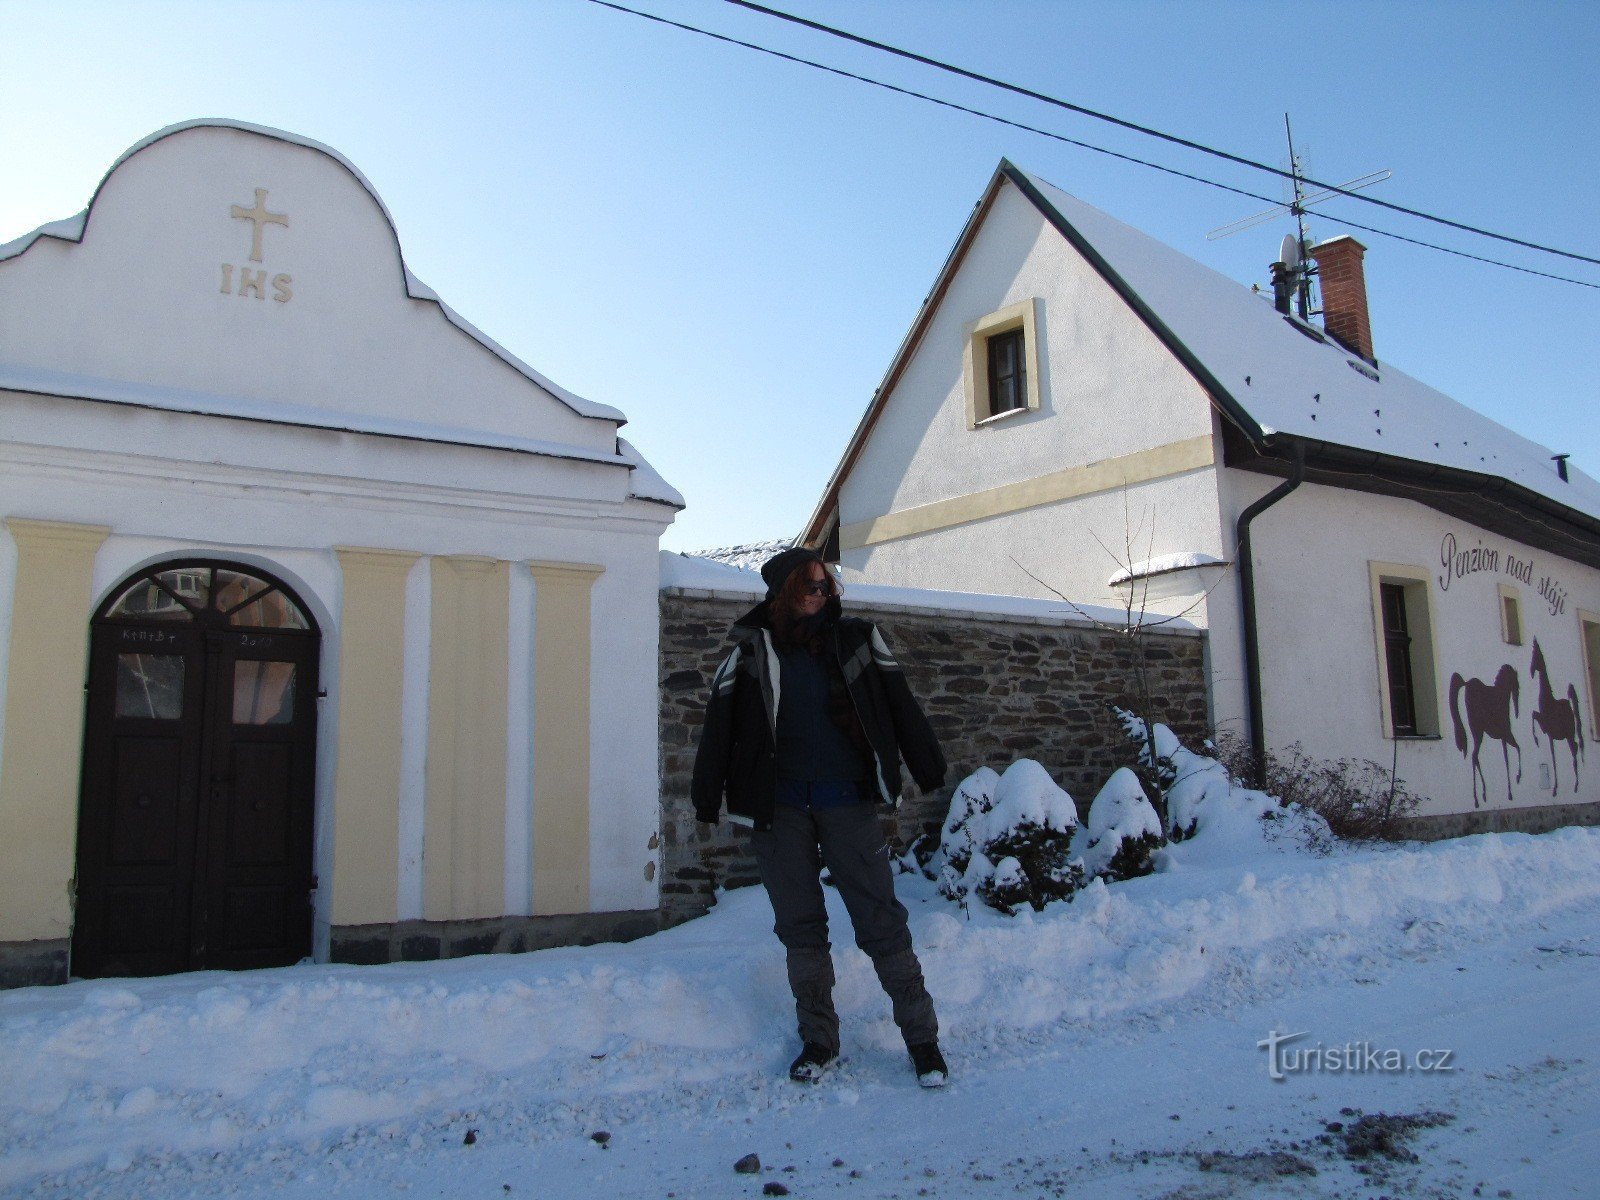 Canteras de pizarra de invierno en Jakartovice